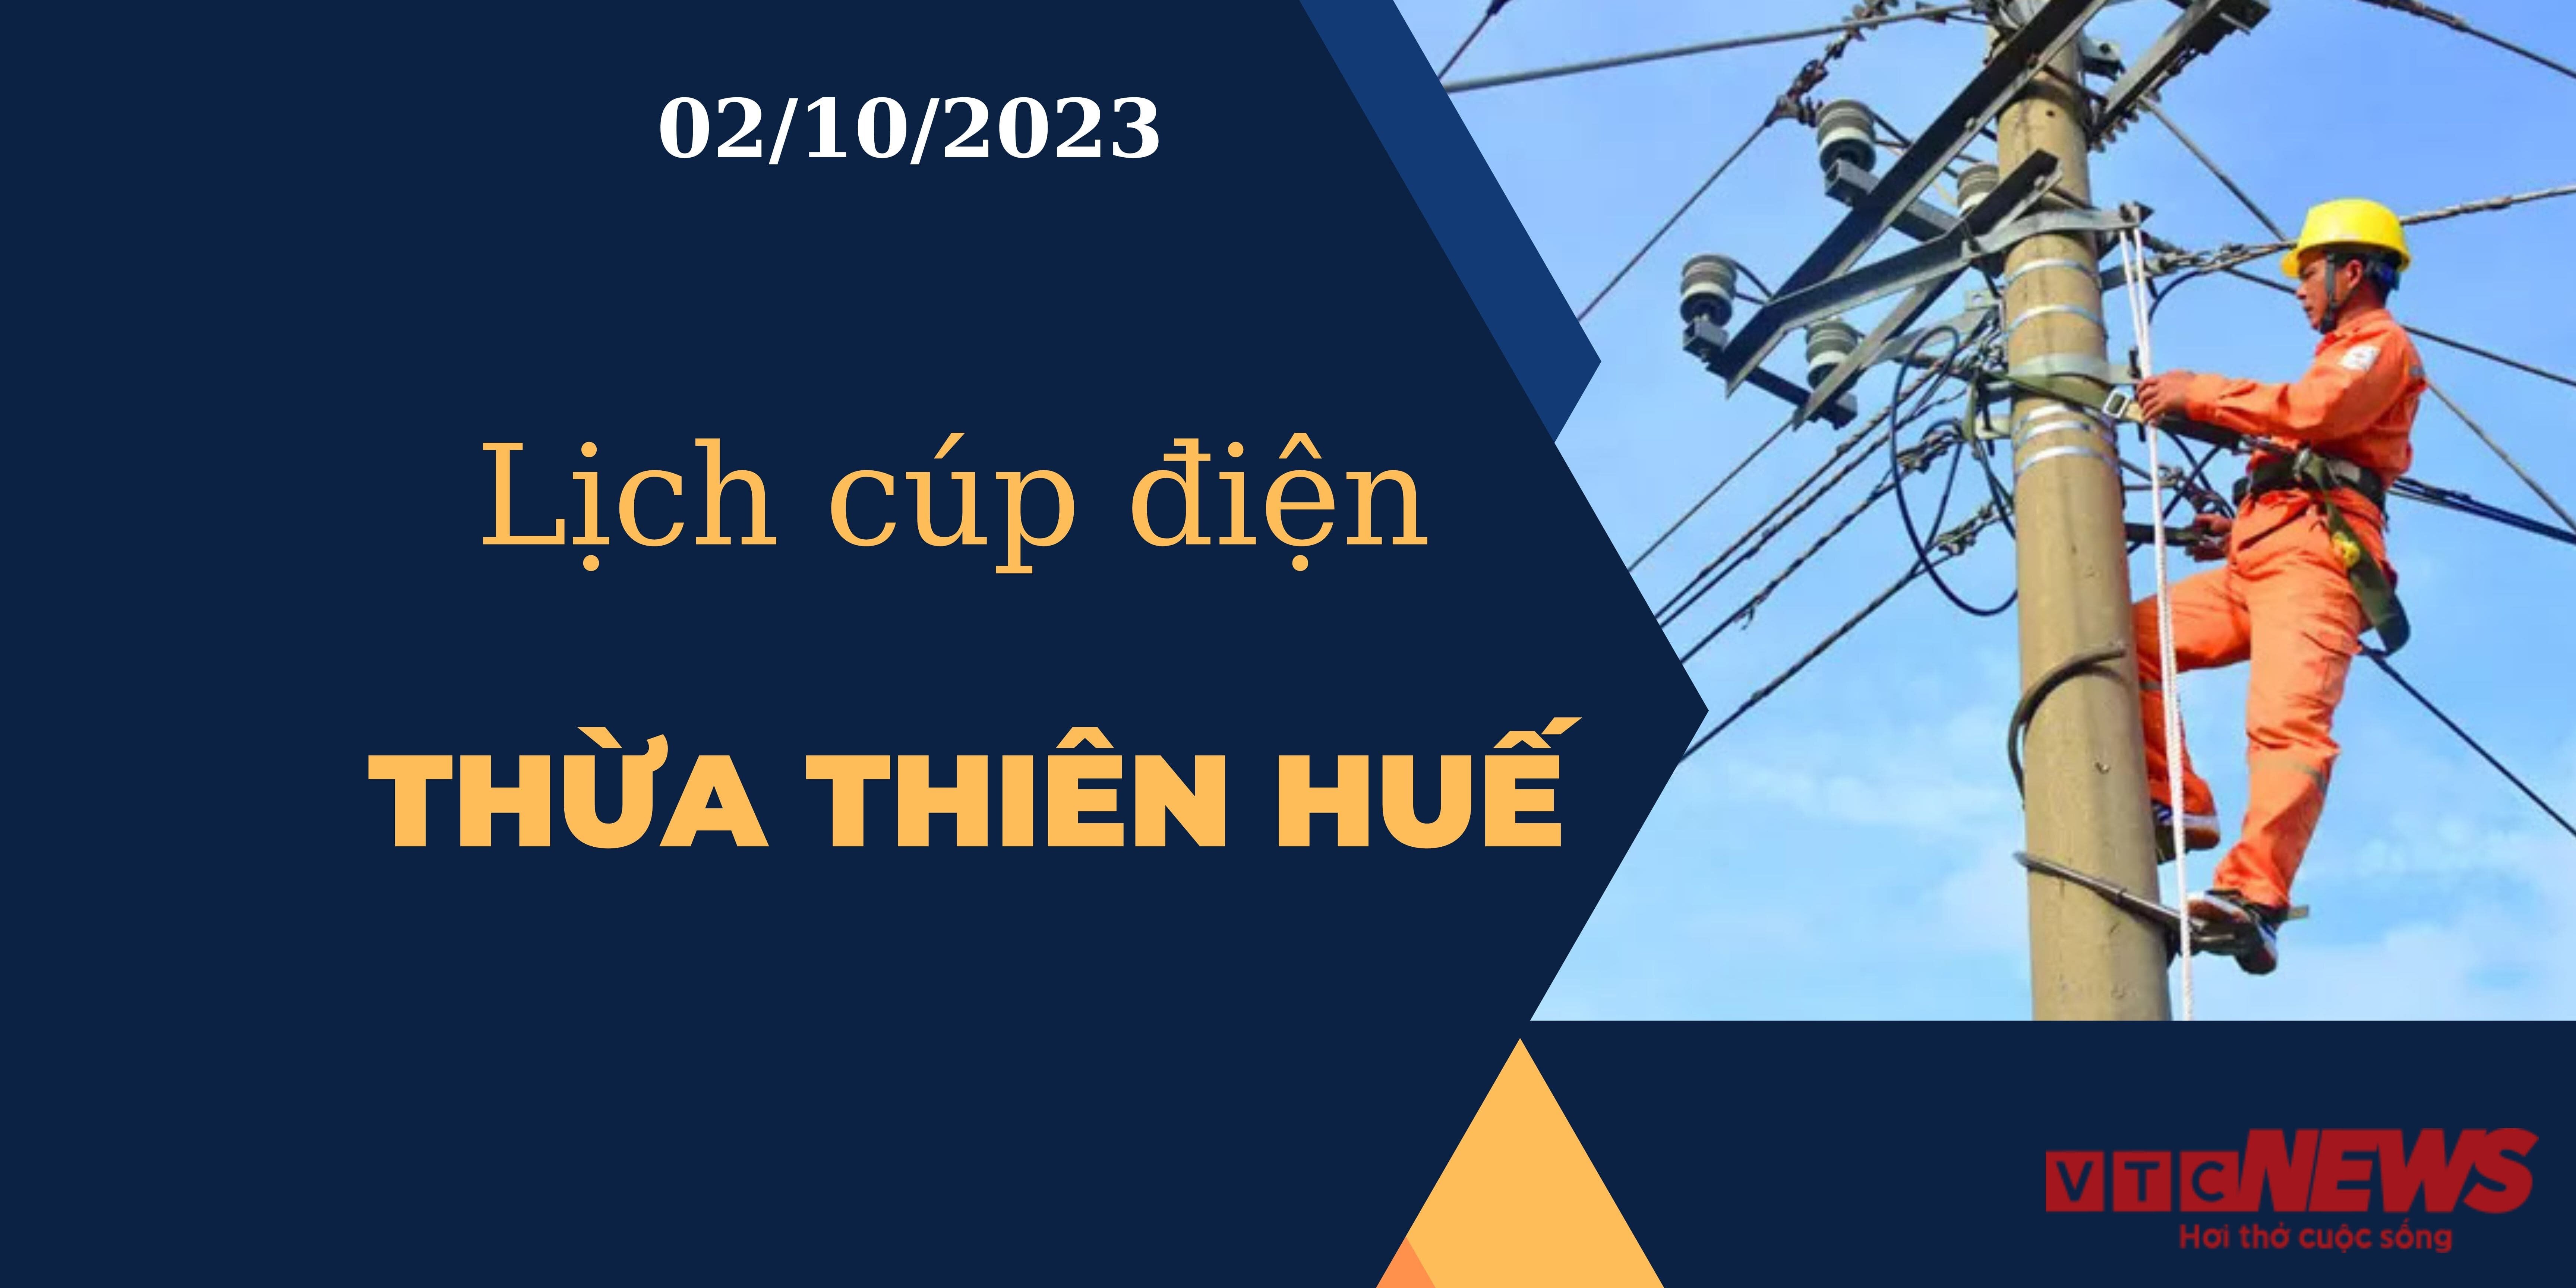 Lịch cúp điện Thừa Thiên Huế ngày 02/10/2023